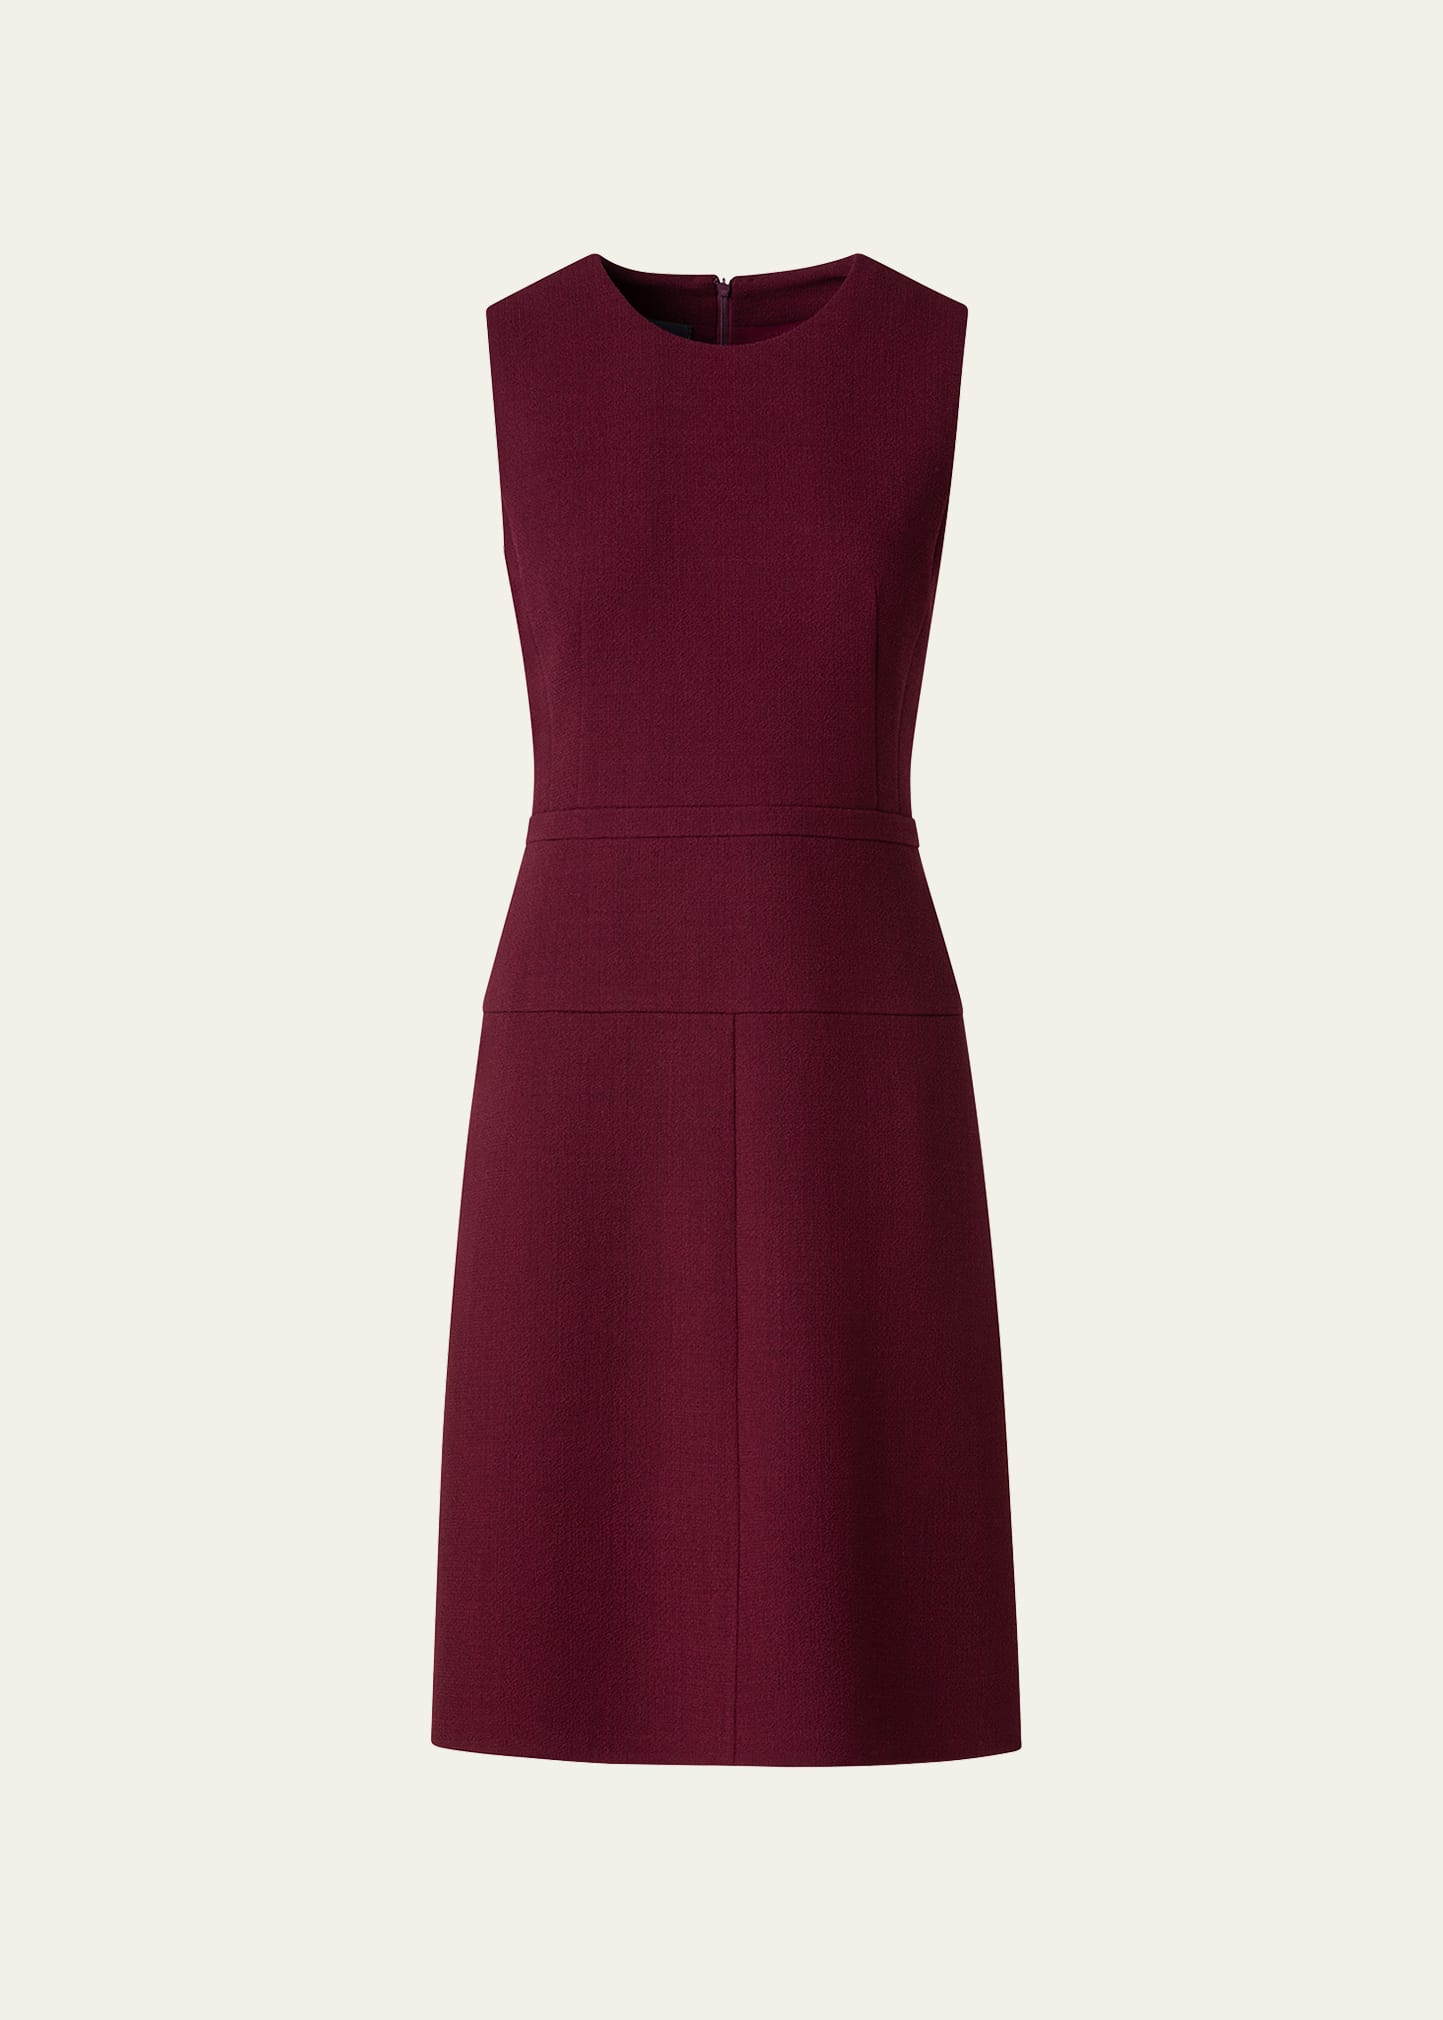 70's Inspired Wool Short Dress